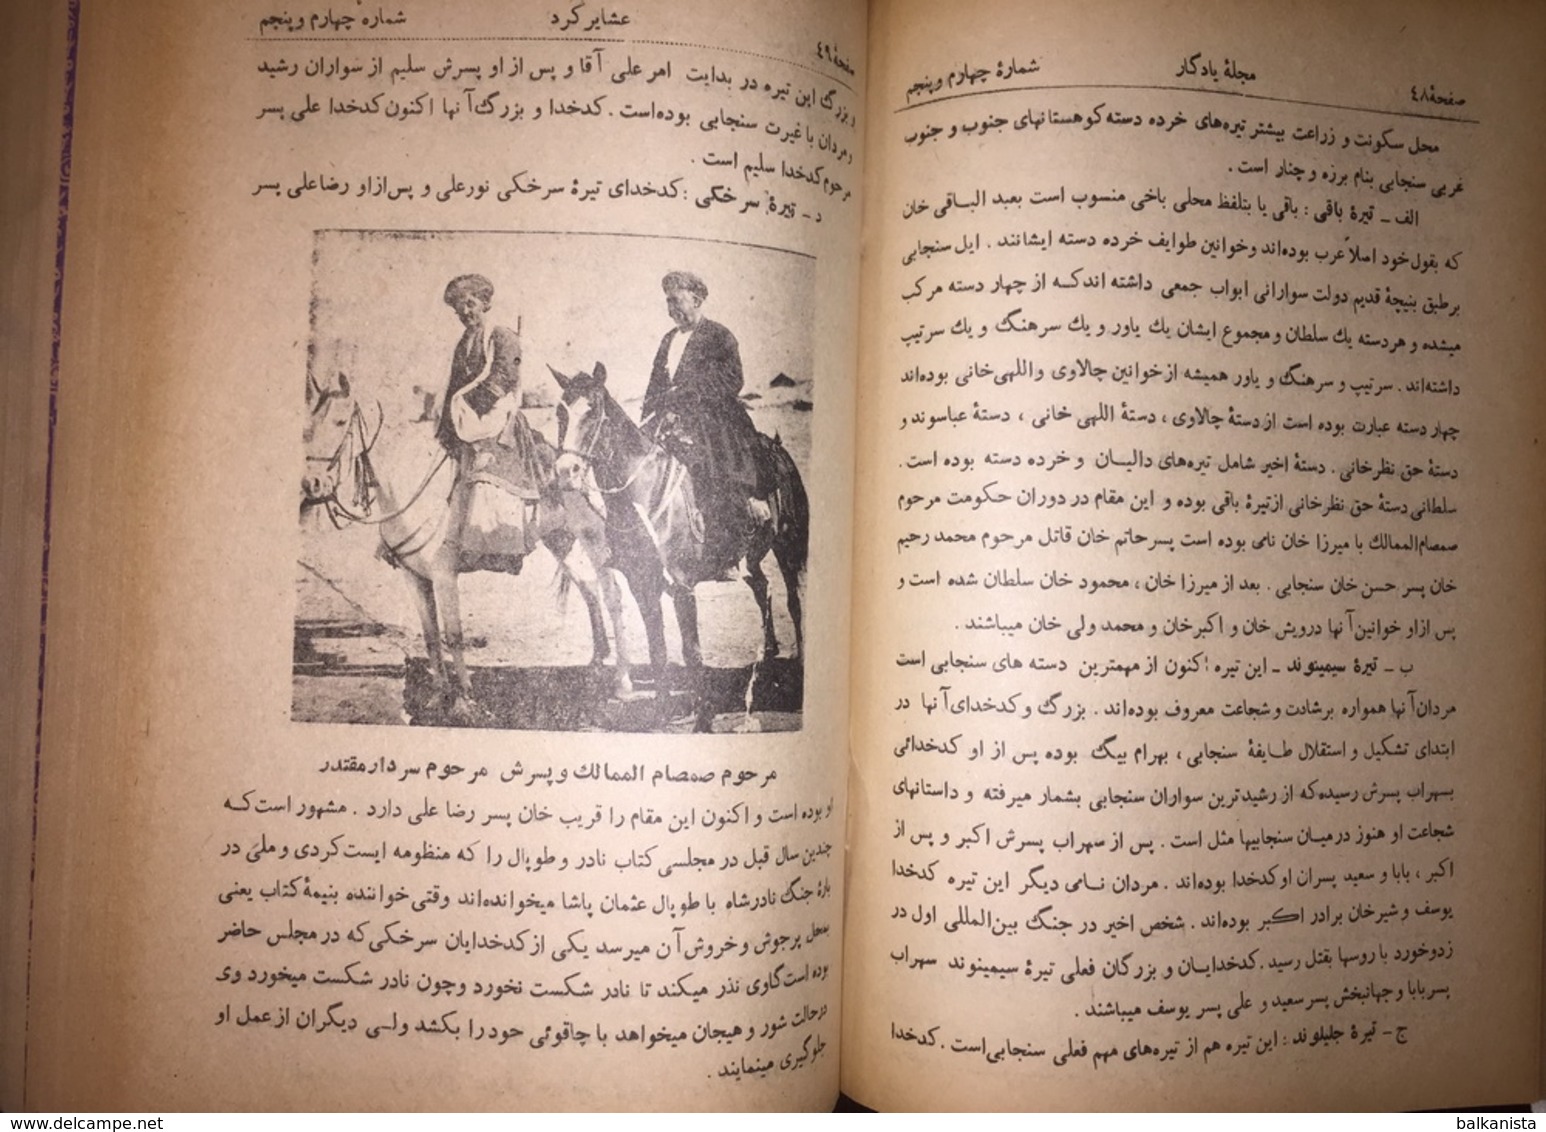 یادگار Persian Magazine Yadgar 1948 Iran 6 Issue